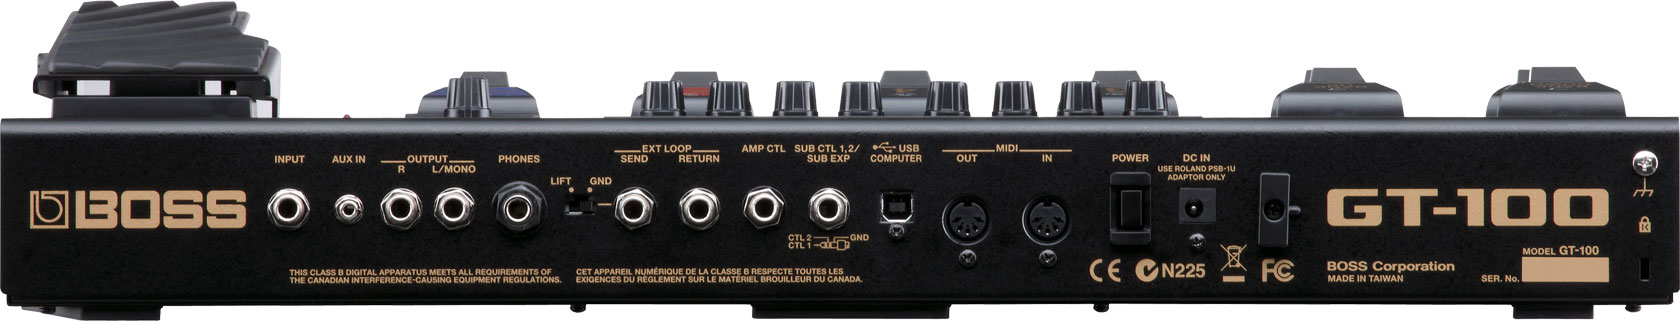 Boss Gt-100 Version 2.0 - Simulacion de modelado de amplificador de guitarra - Variation 1